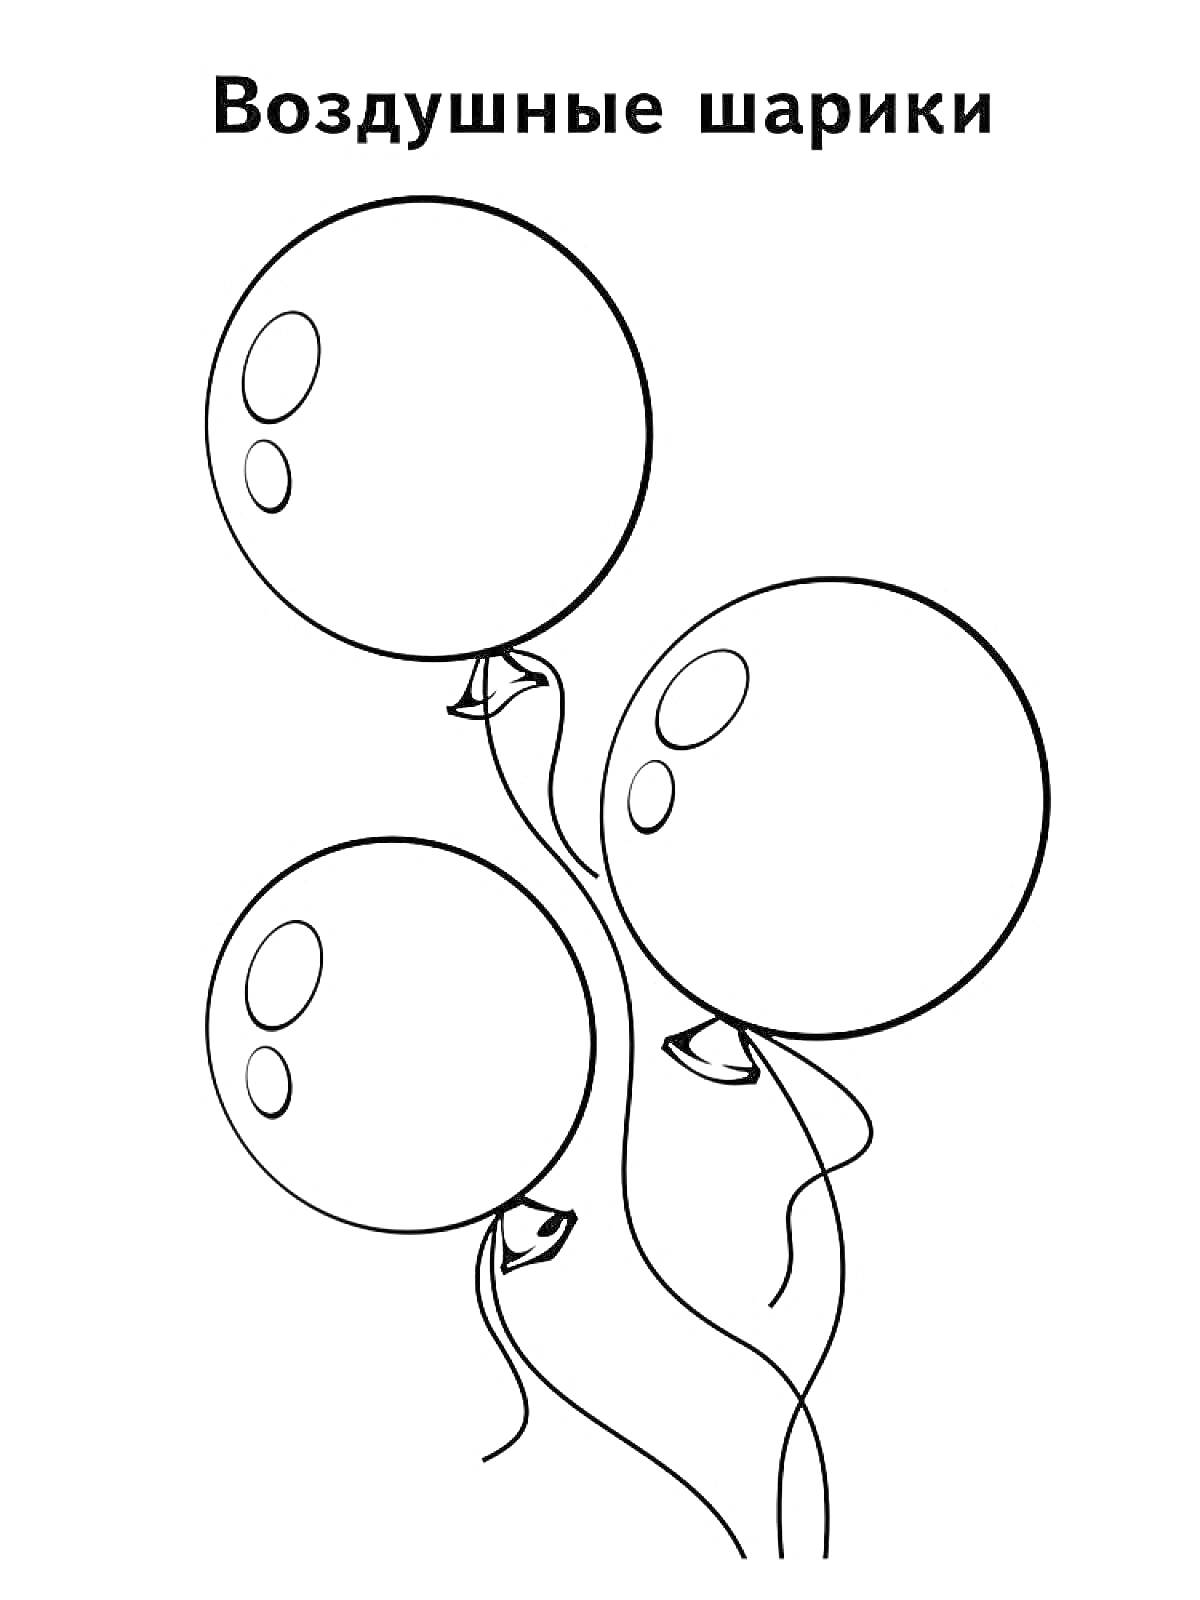 Три воздушных шарика, поднятые в воздух, с длинными нитями